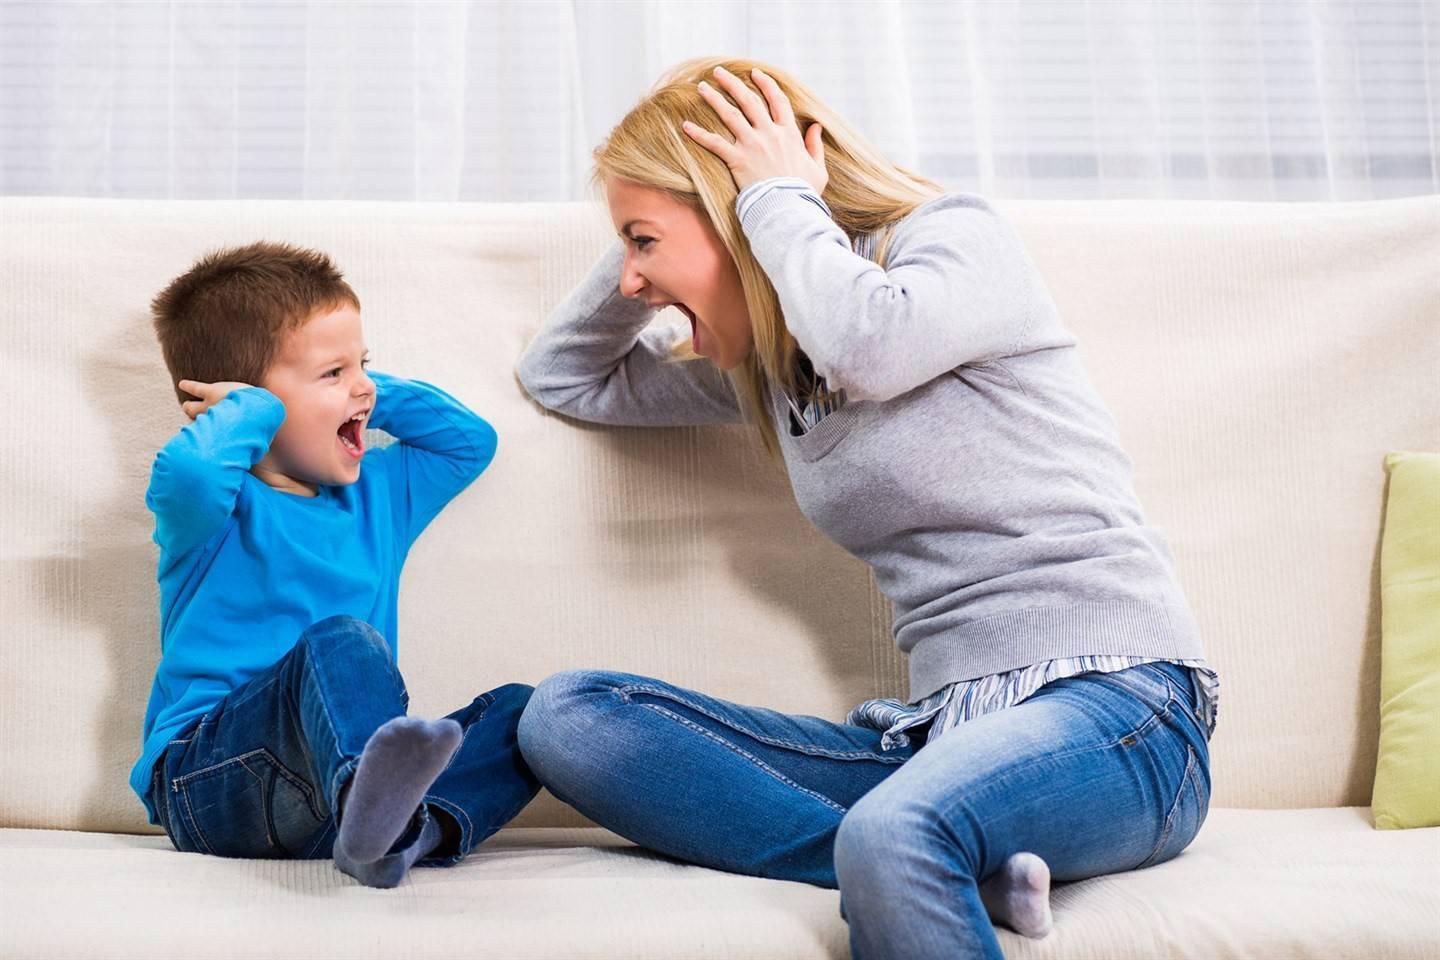 7 грубых ошибок родителей во время ссор с детьми